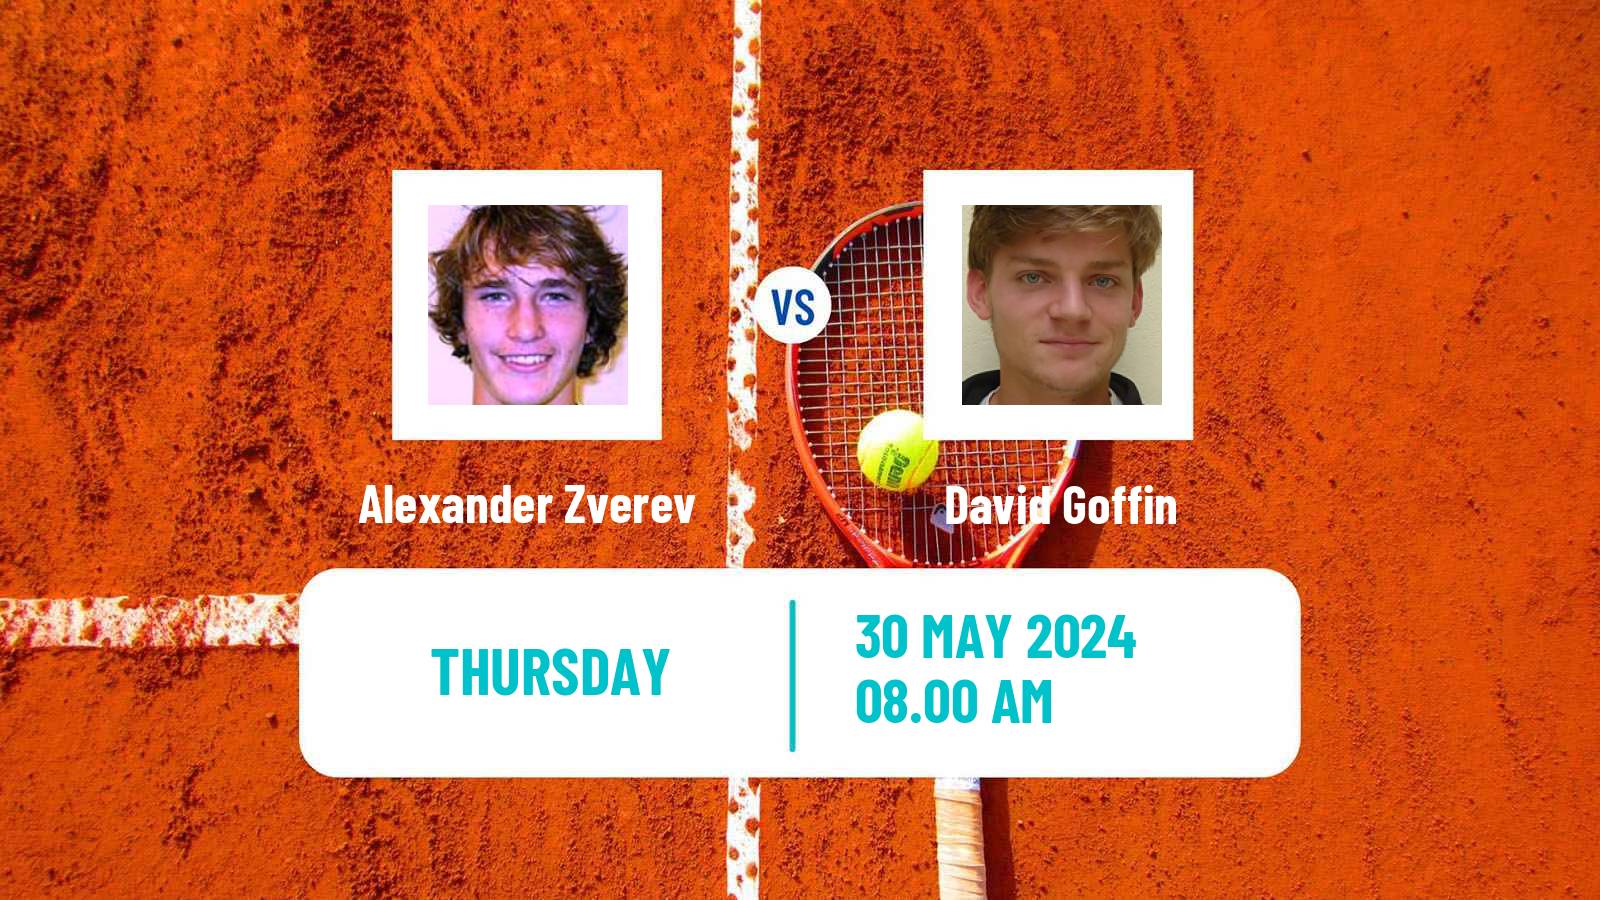 Tennis ATP Roland Garros Alexander Zverev - David Goffin